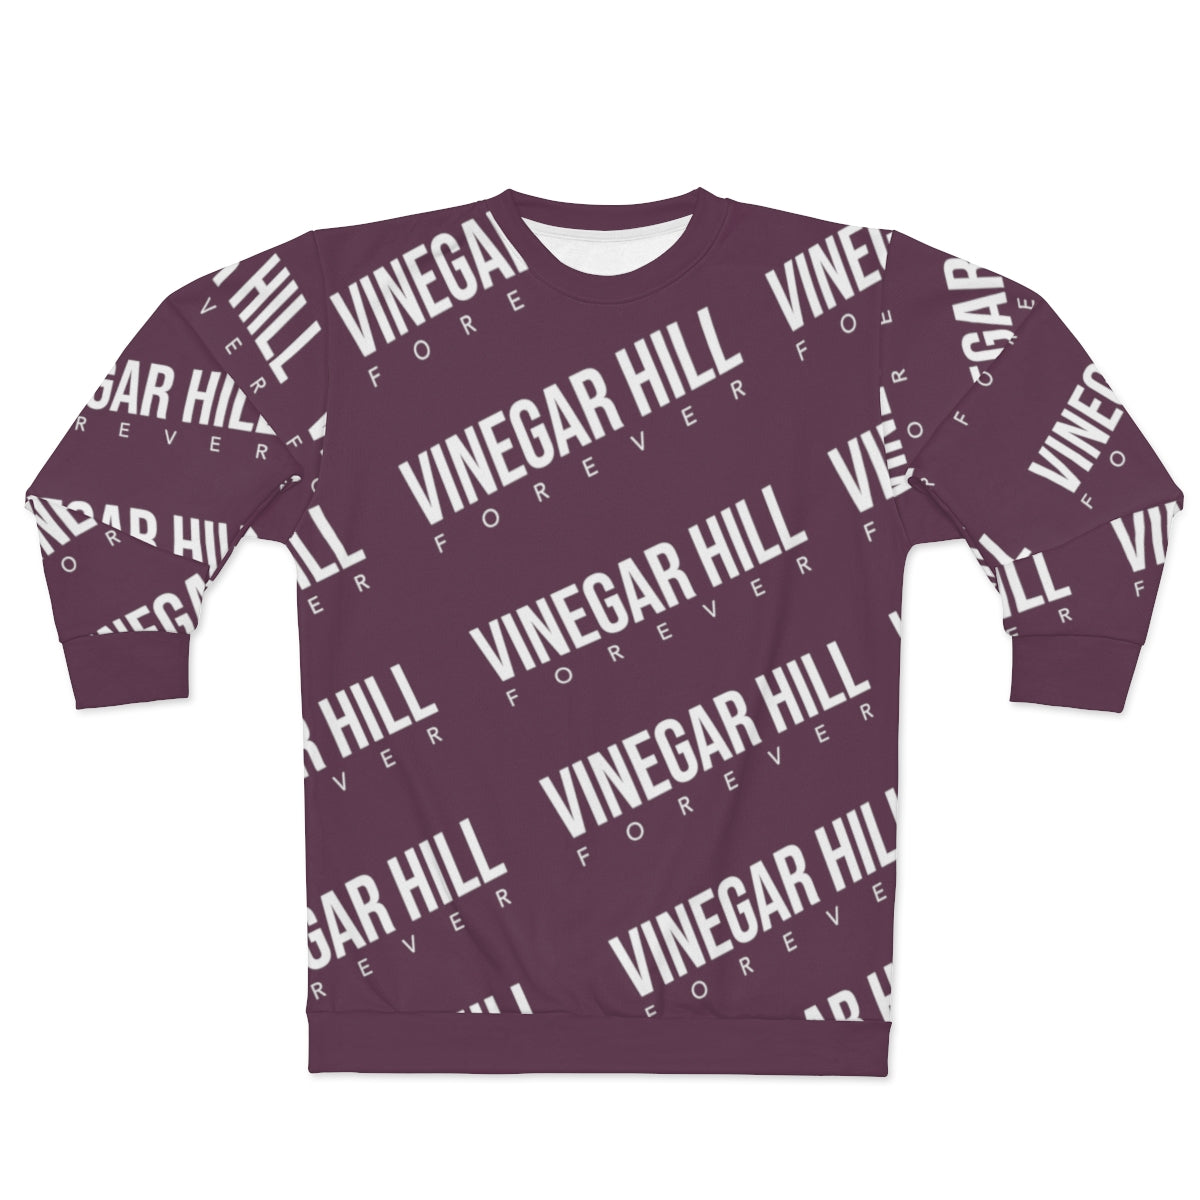 Vinegar Hill Forever Crew Neck Sweater